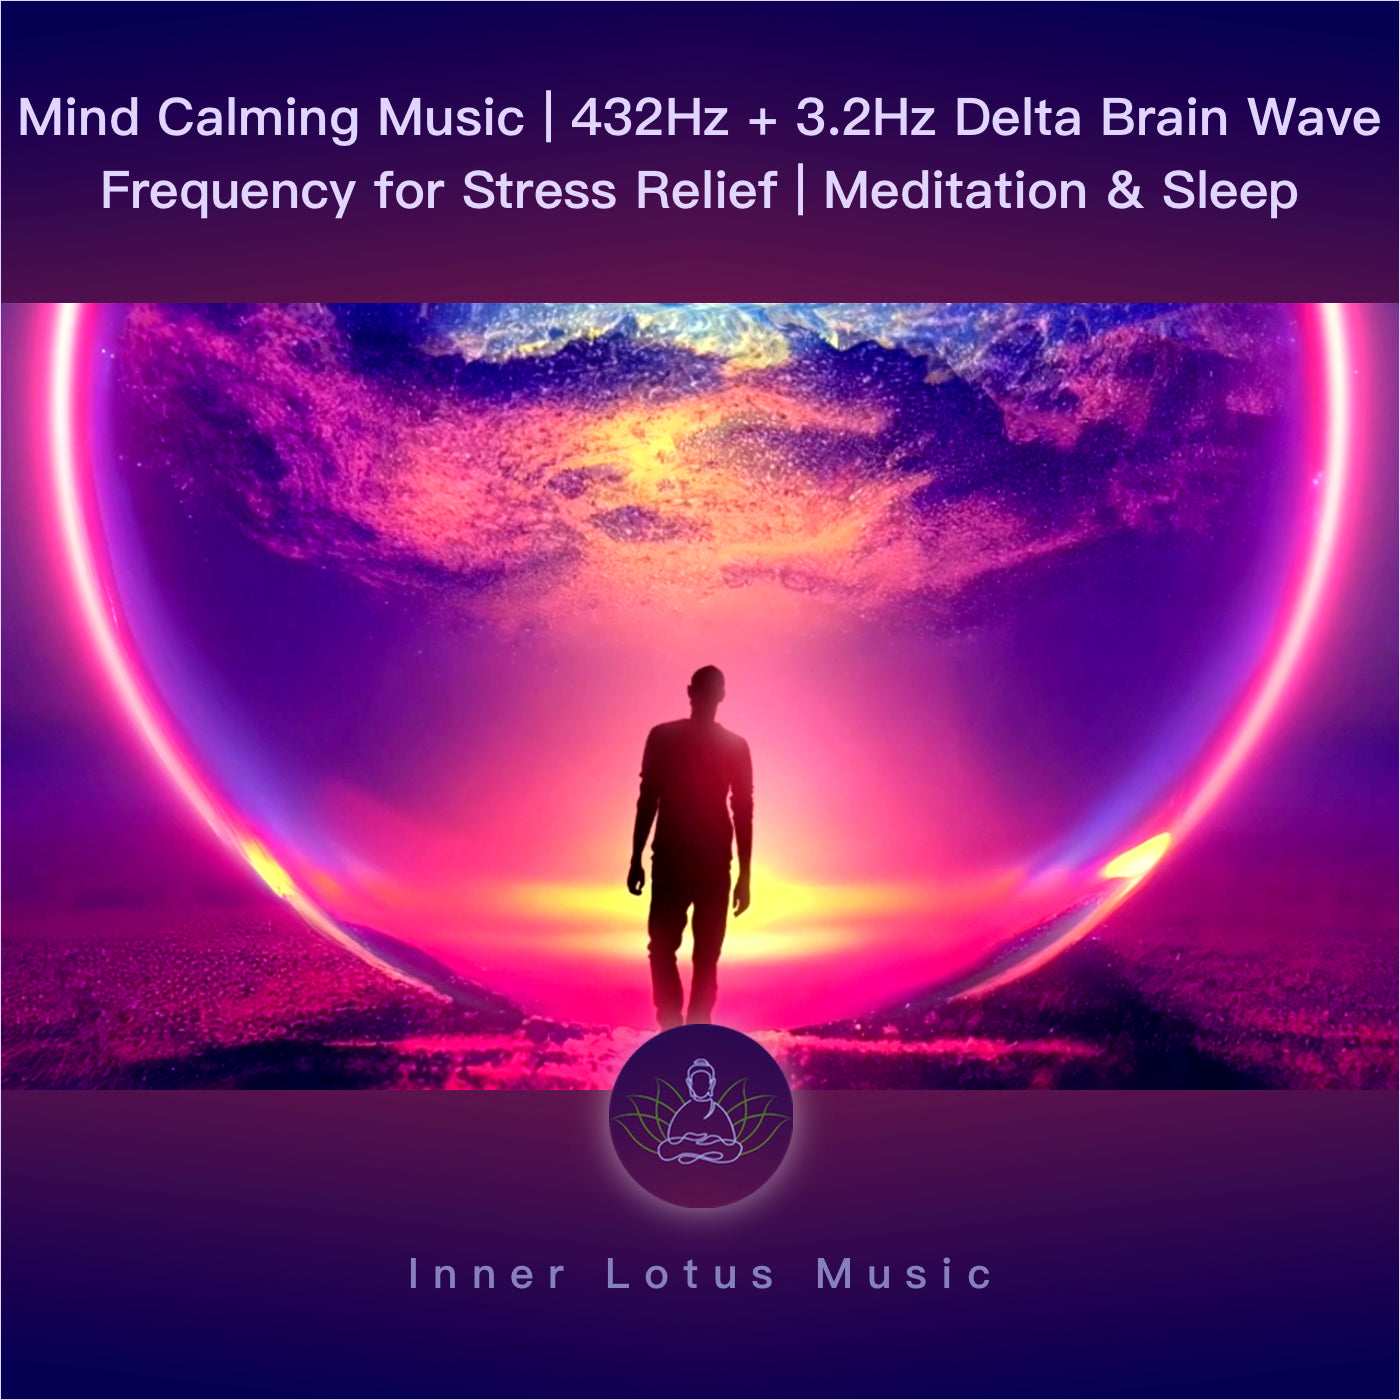 Mind Calming Music | 432Hz + 3.2Hz Delta Brain Wave Frequency for Stress Relief | Meditation & Sleep